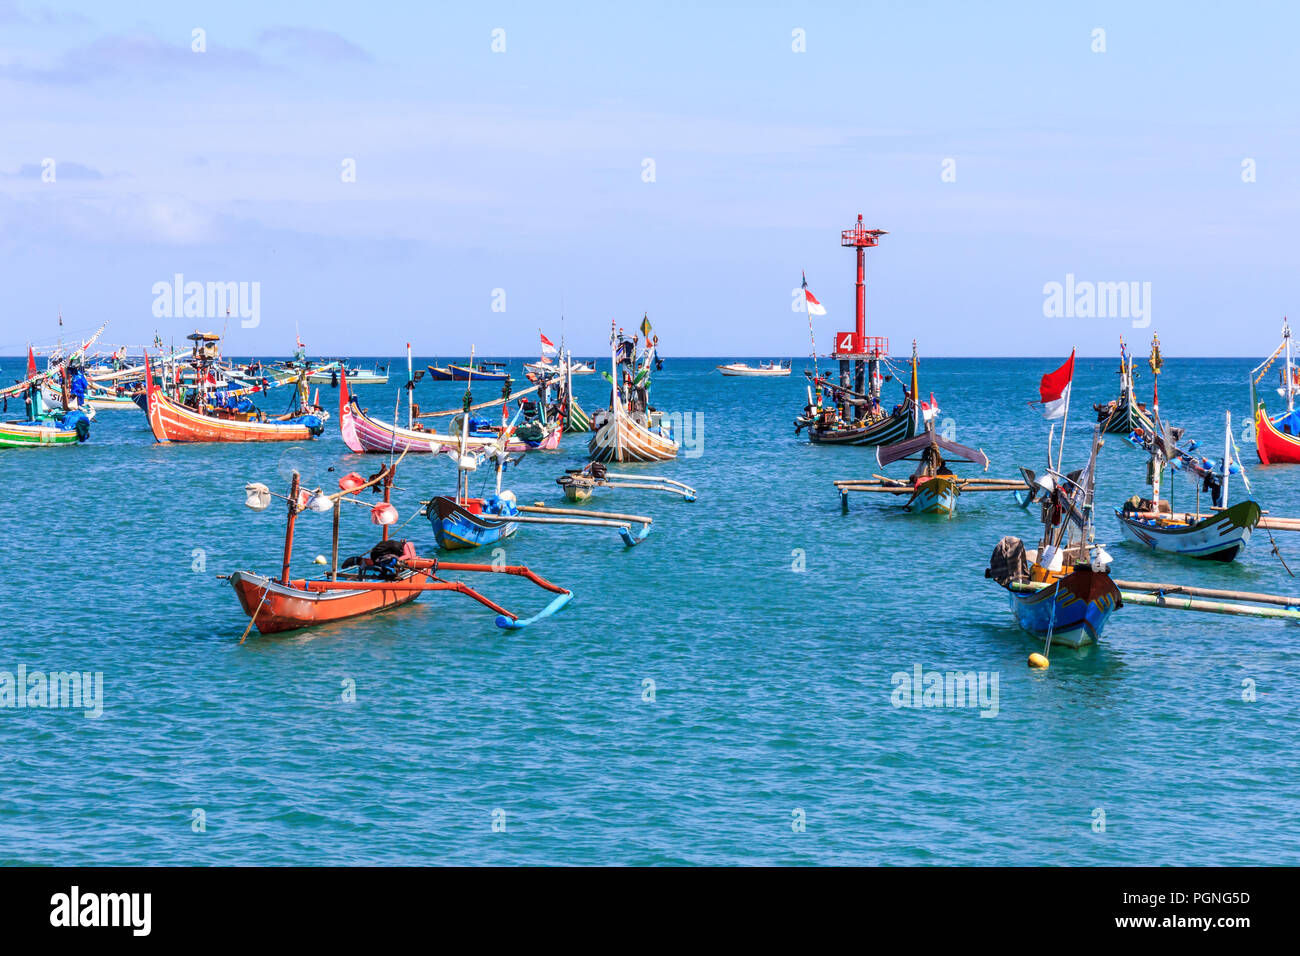 Un style balinais traditionnel, les bateaux de pêche au large de la plage de Jimbaran. Ils sont connus comme Jukungs. Banque D'Images